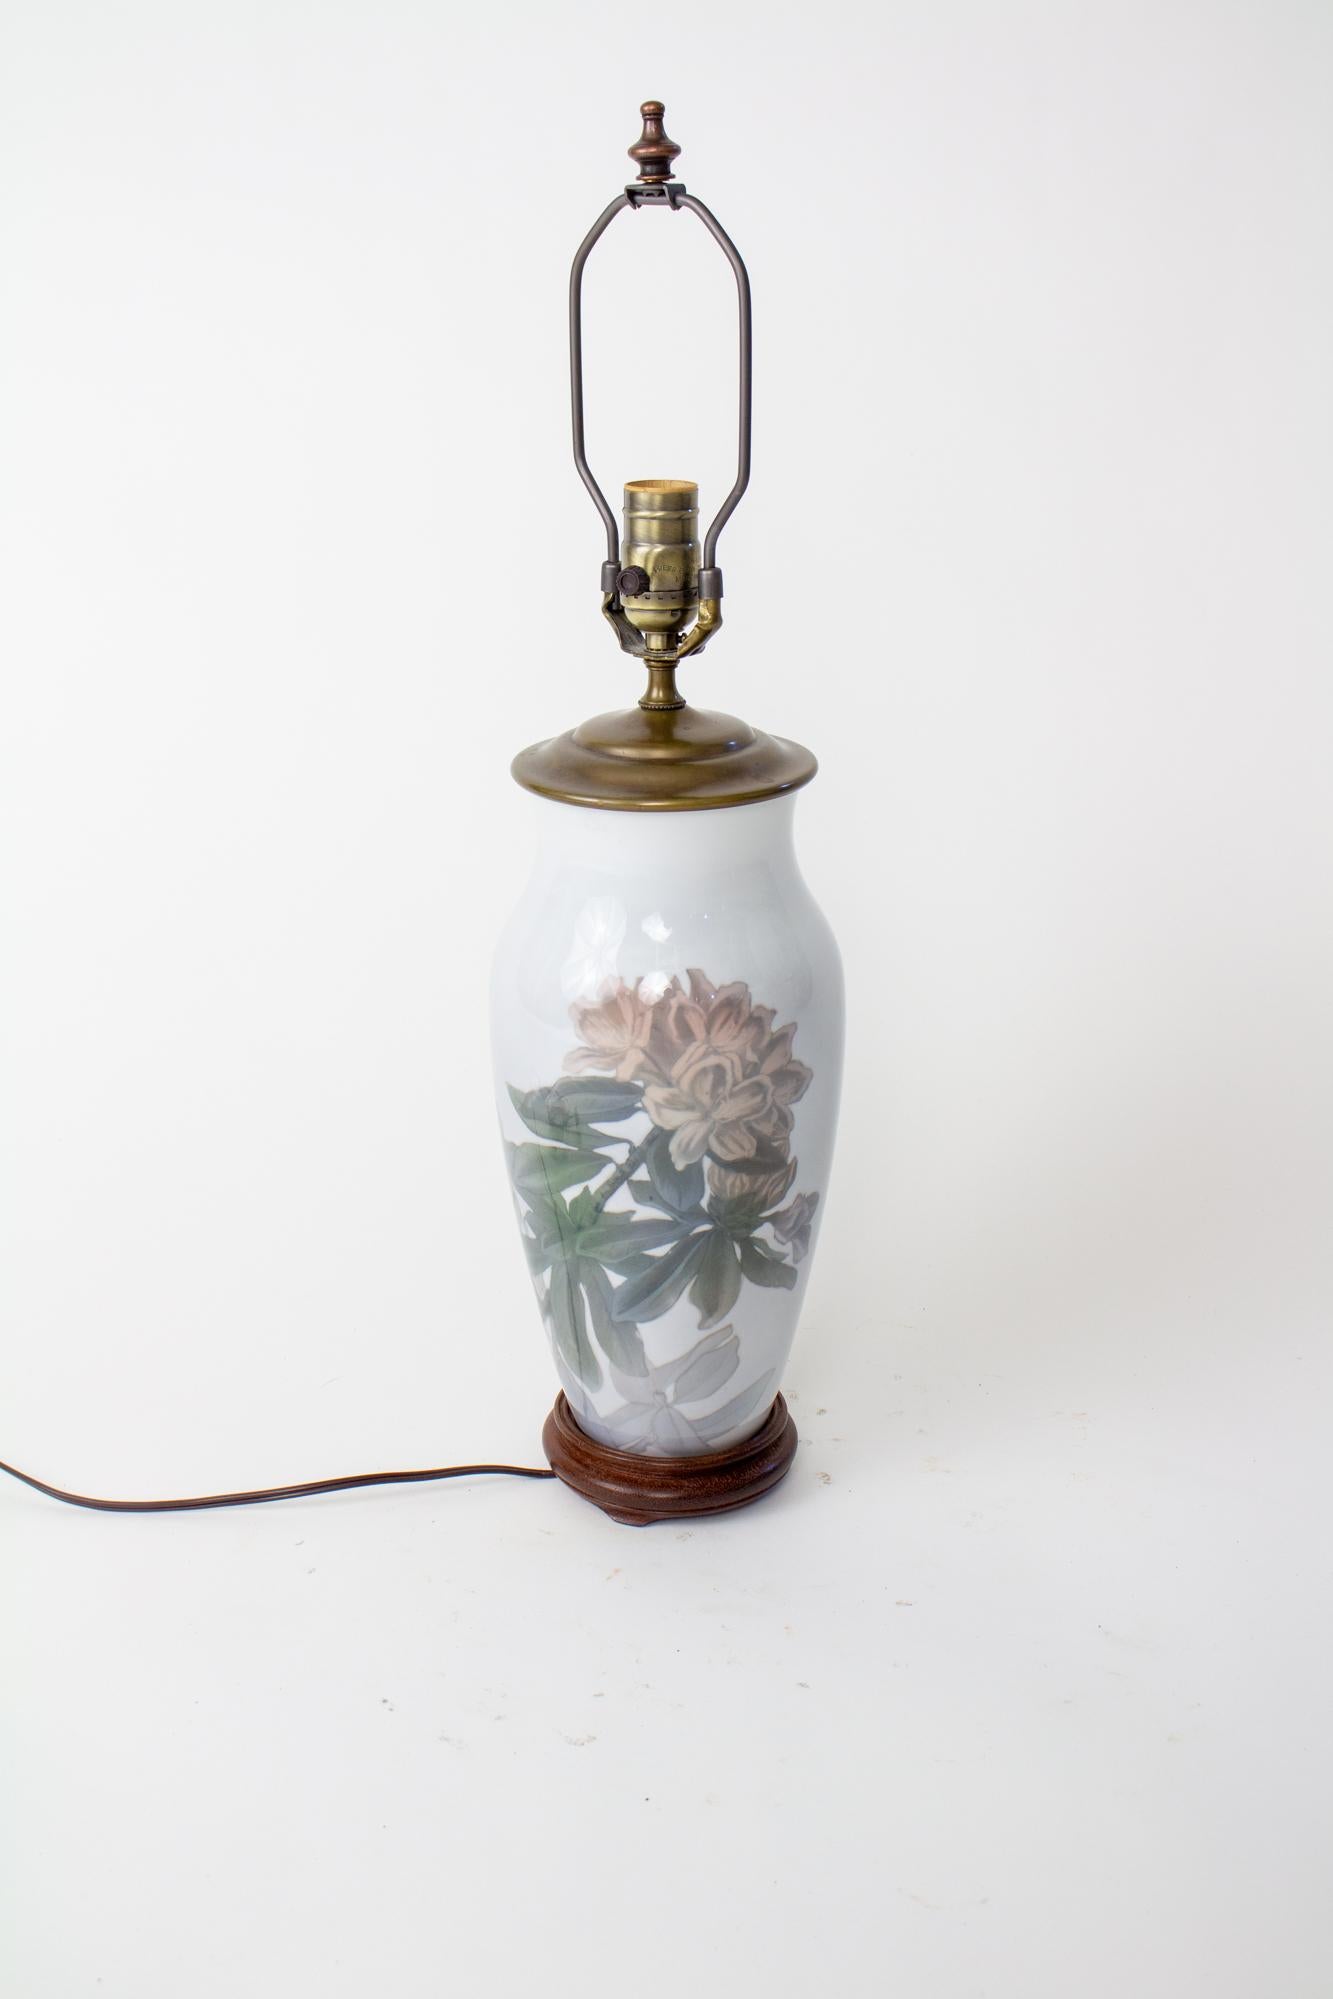 Lampe de table en rhododendron du milieu du 20e siècle de Royal Copenhagen. Vase du milieu du 20e siècle transformé en lampe de table. Motif de rhododendrons roses poussiéreux sur fond gris clair. Base en bois sculpté, bouchon de vase en laiton.